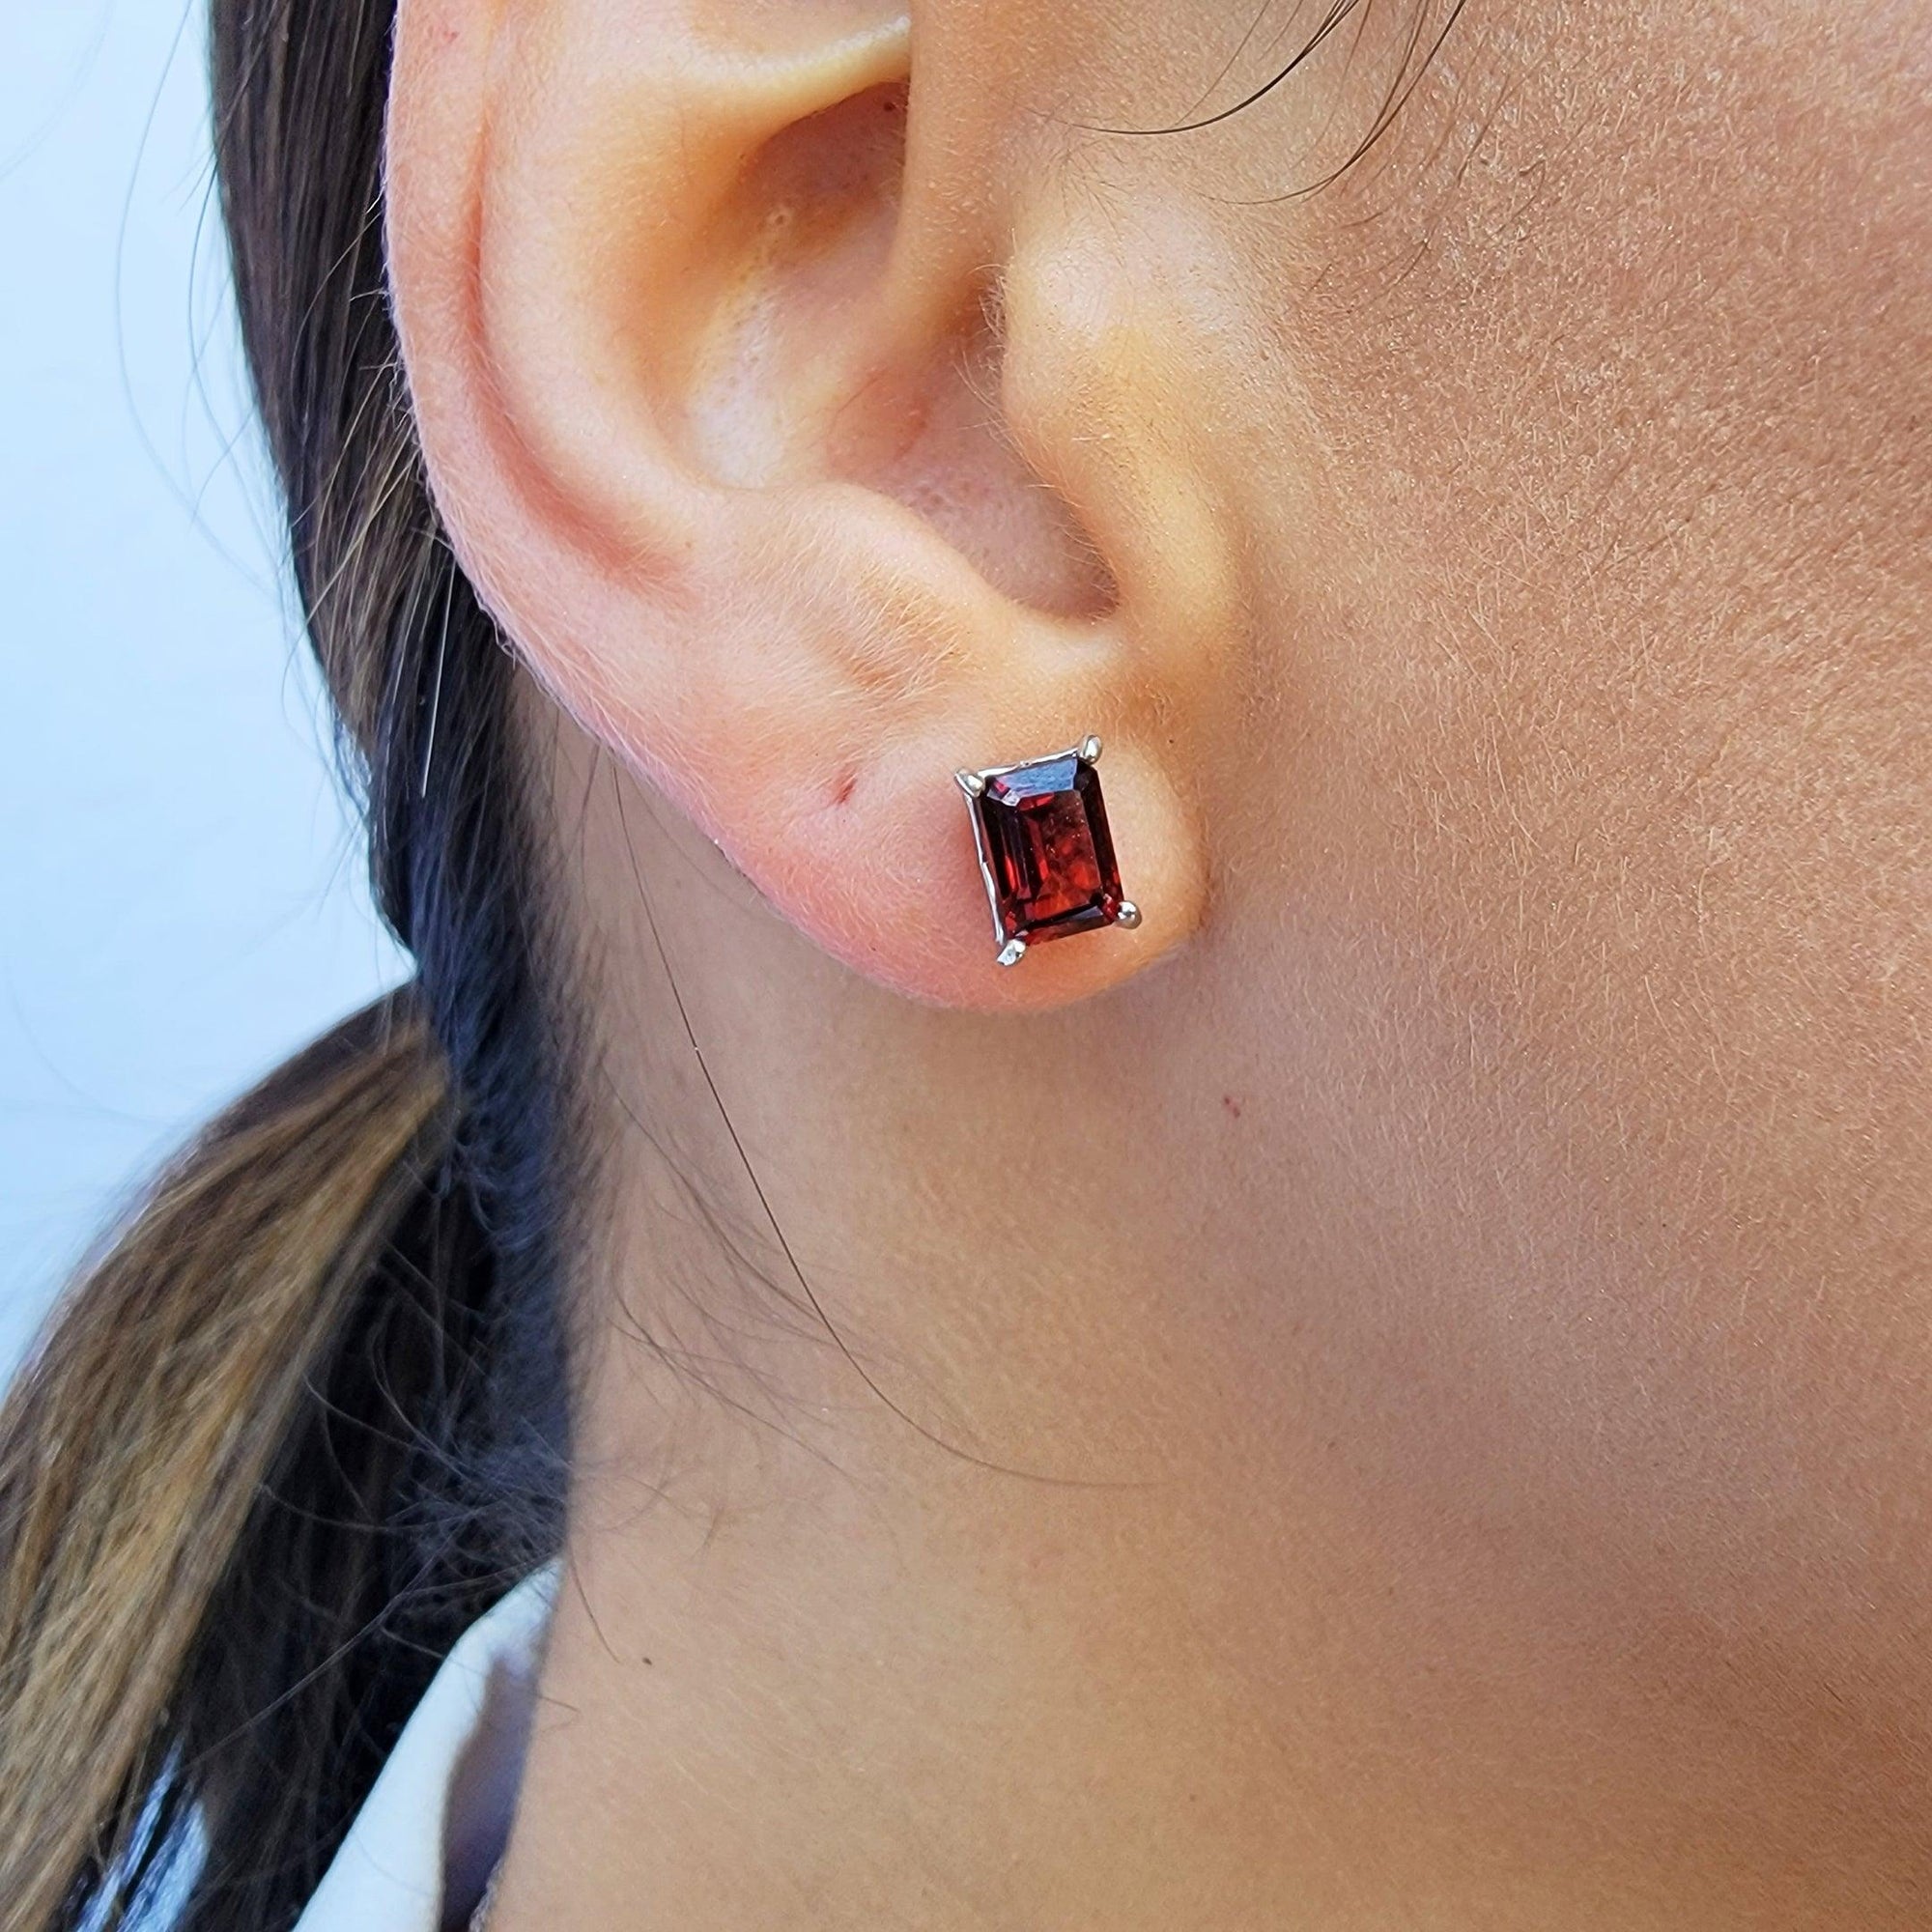 Real Garnet Heart Stud Earrings - Uniquelan Jewelry